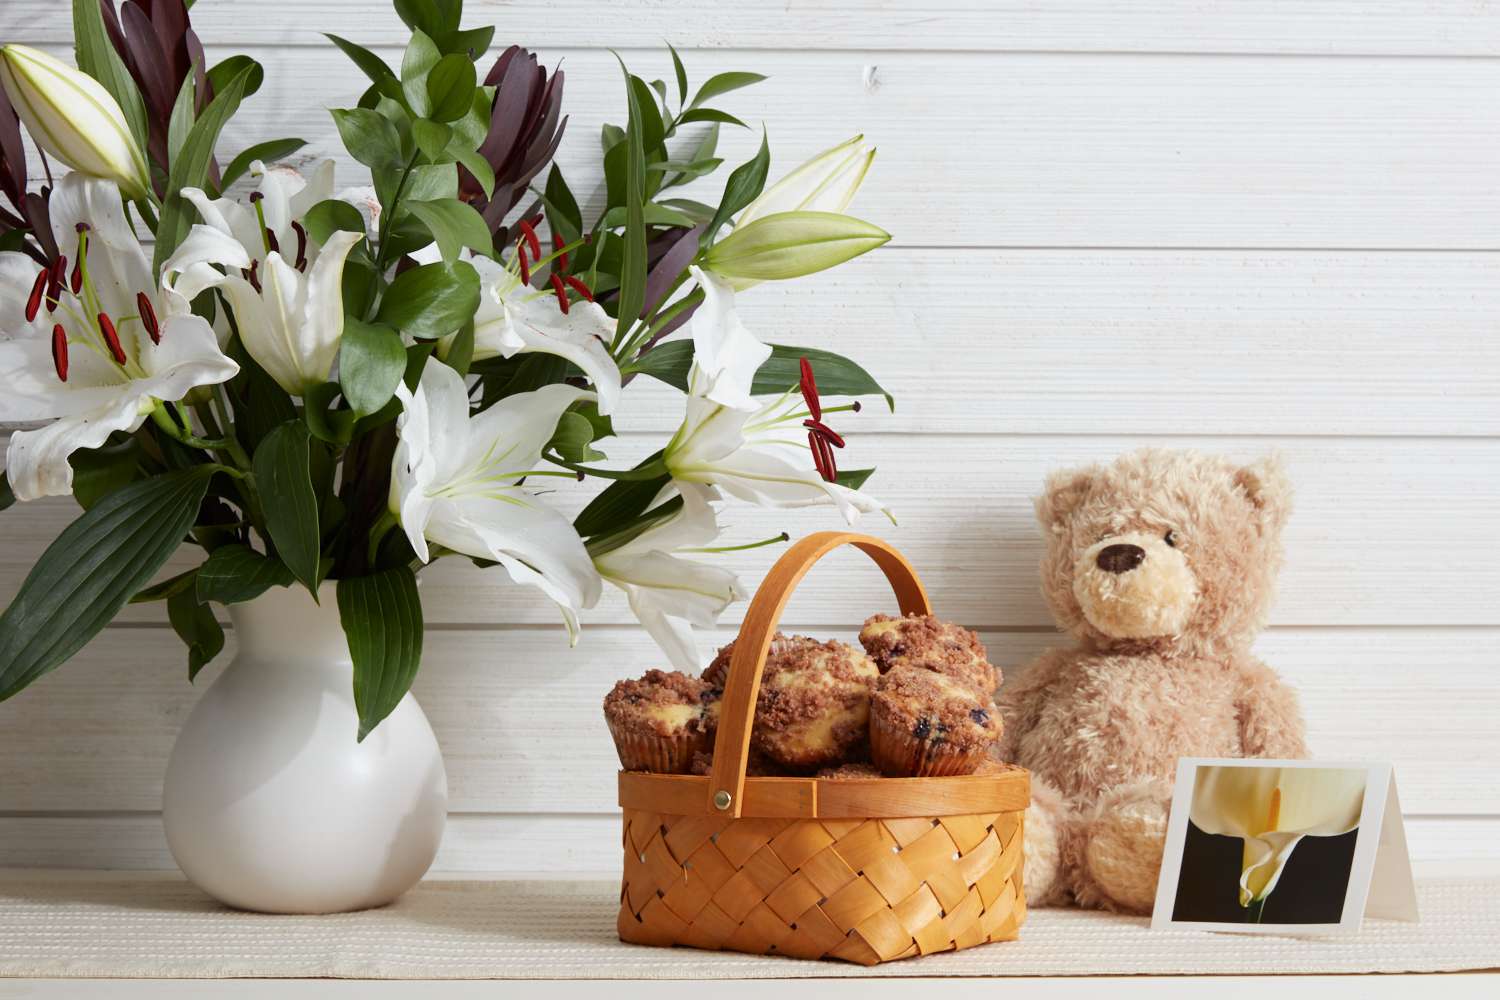 Teddybär, Muffins, Blumen und eine Karte